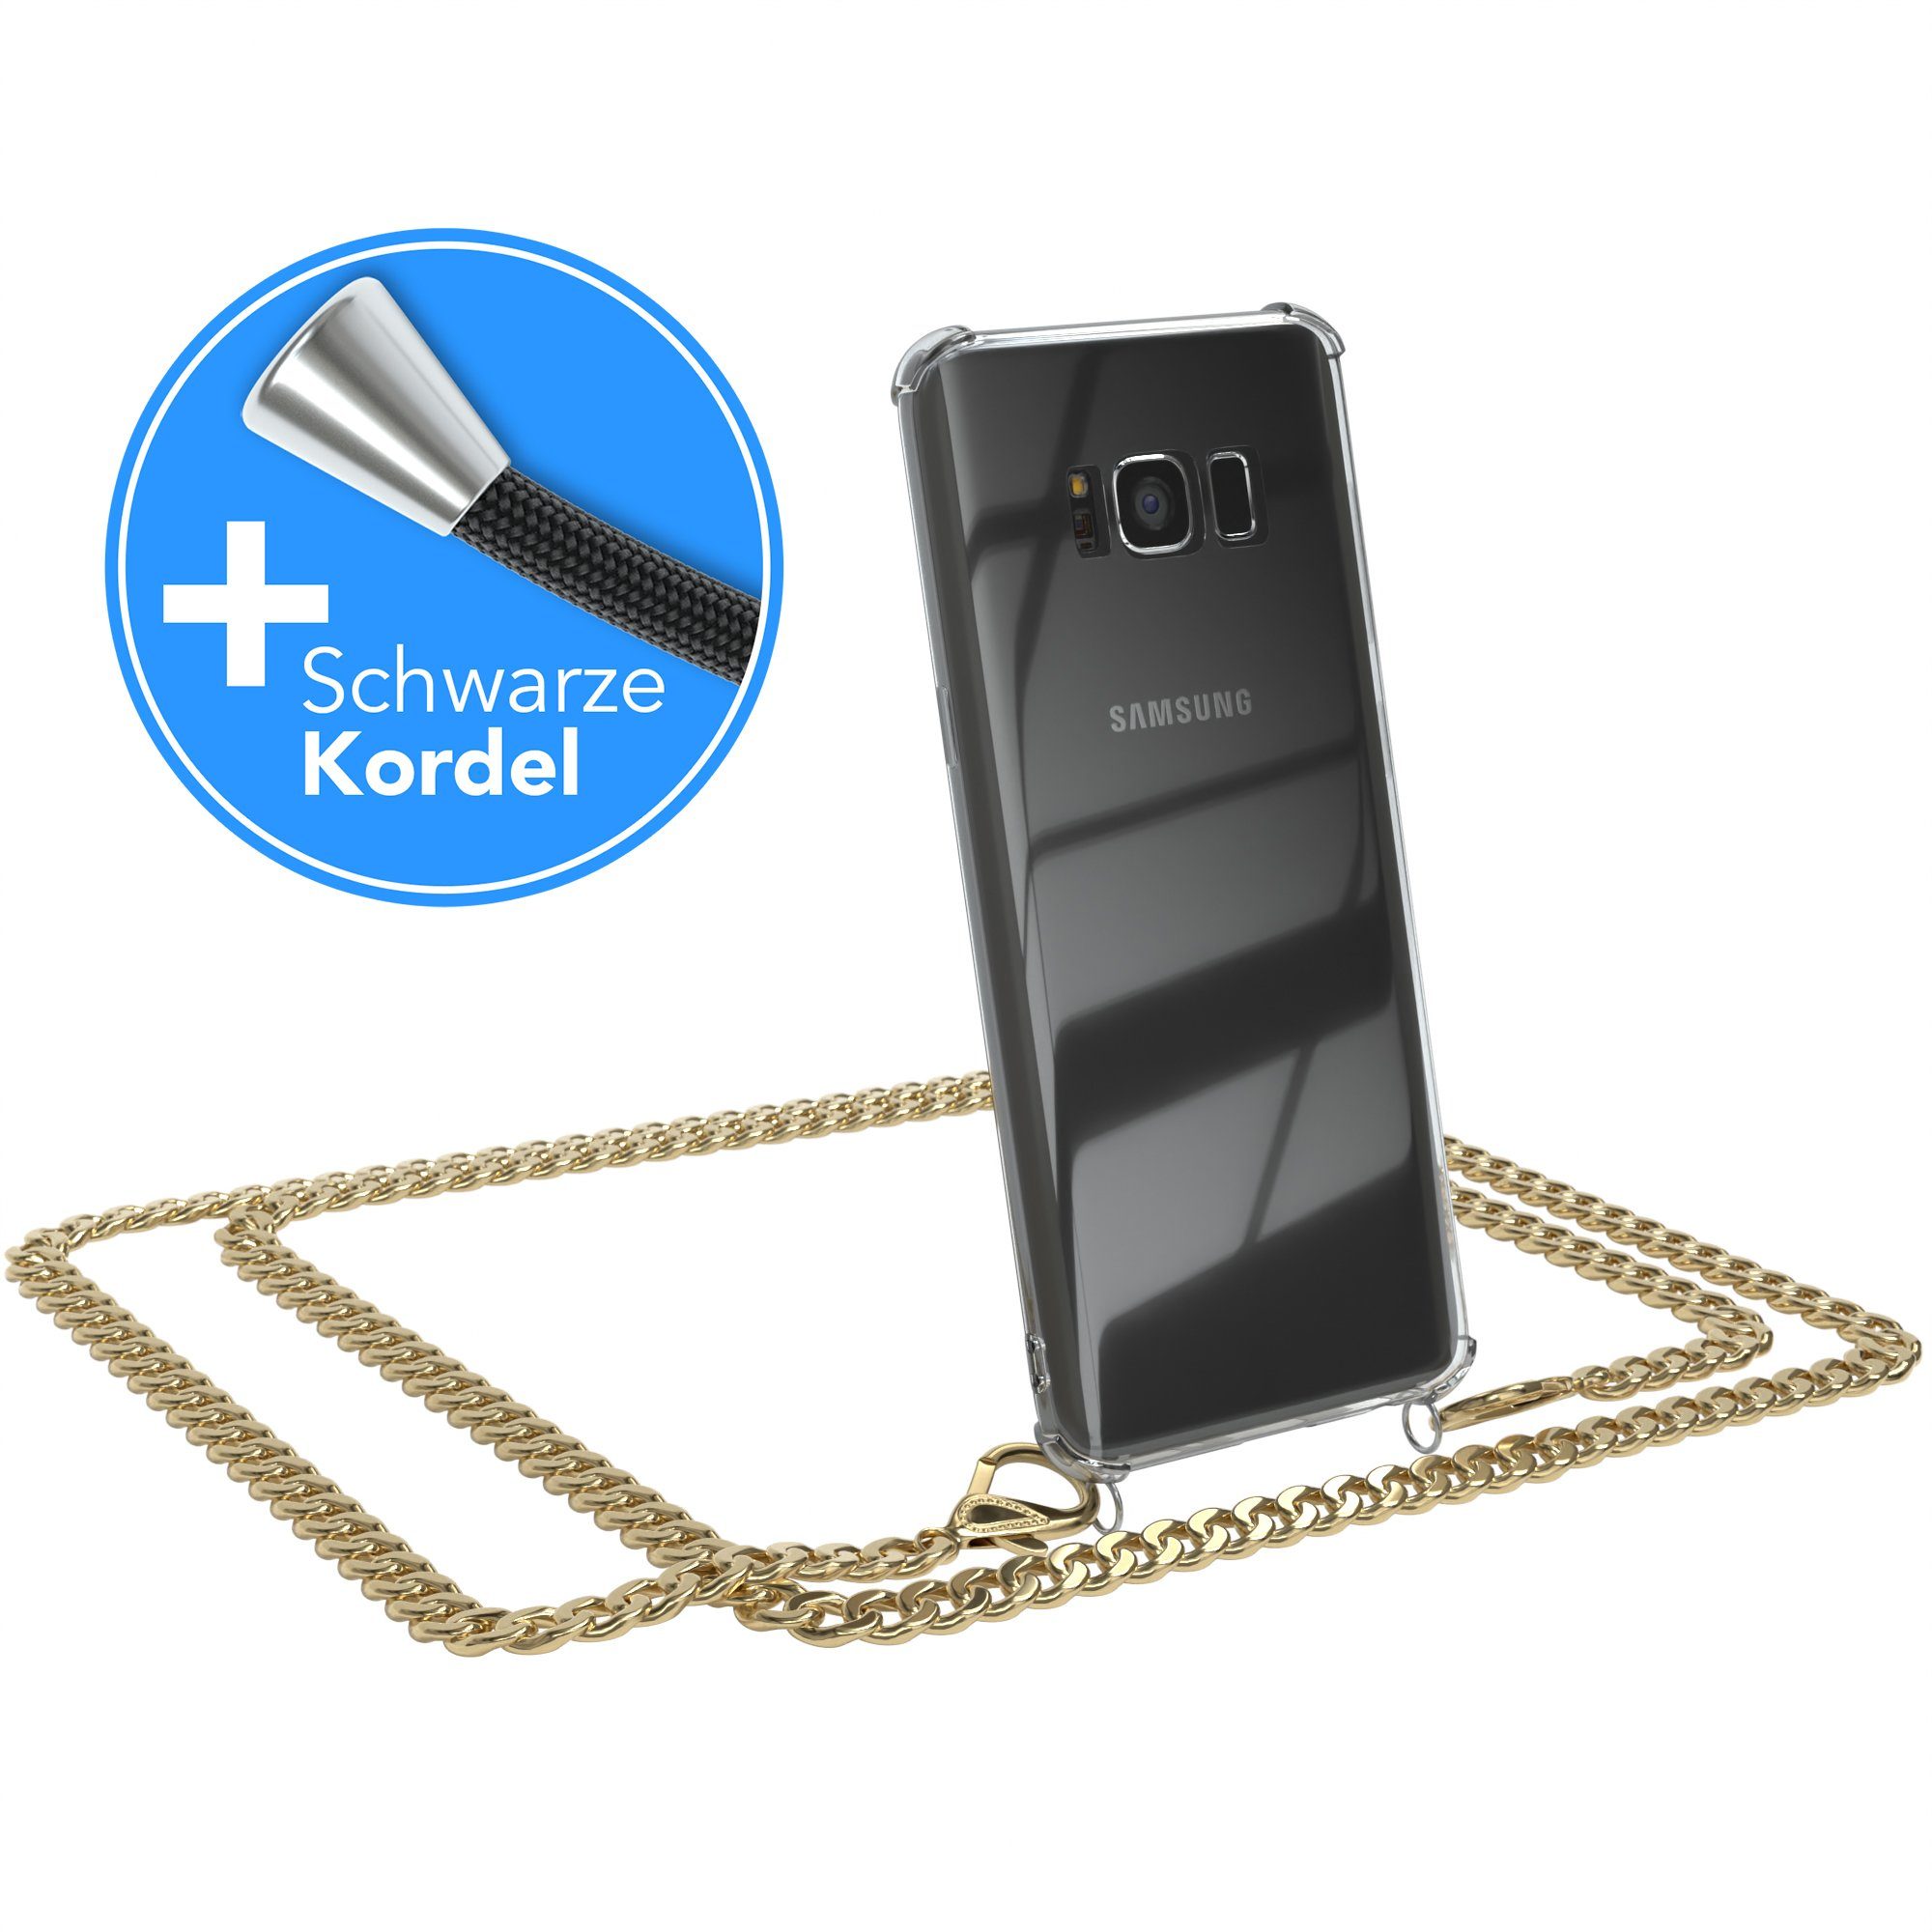 EAZY CASE Handykette 2in1 Metallkette für Samsung Galaxy S8 5,8 Zoll, Hülle mit Band Silikonhülle durchsichtig Necklace Cover Slimcover Gold